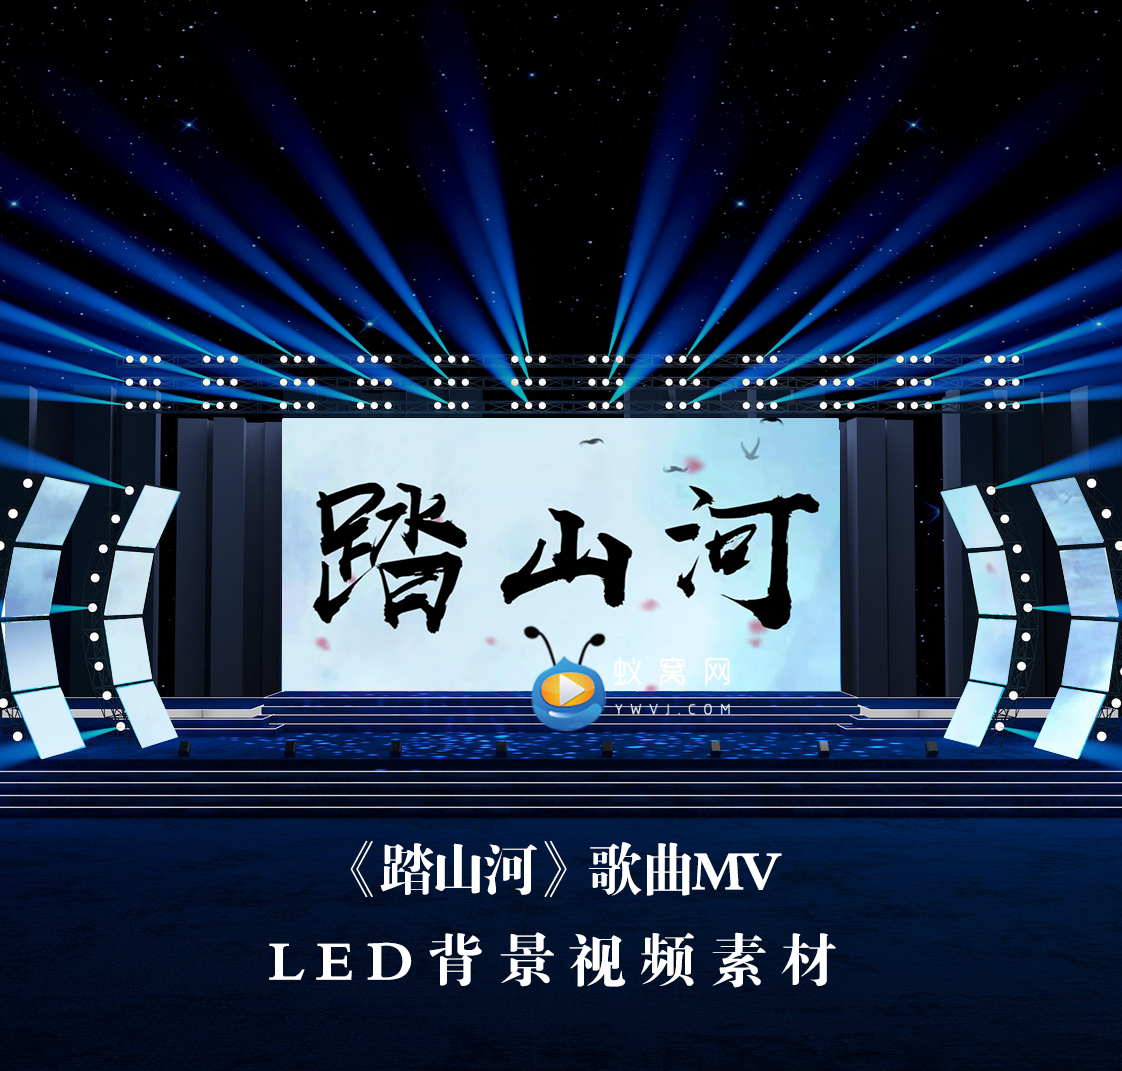 S3470踏山河伴奏版 晚会演出LED节目大屏舞美背景视频素材